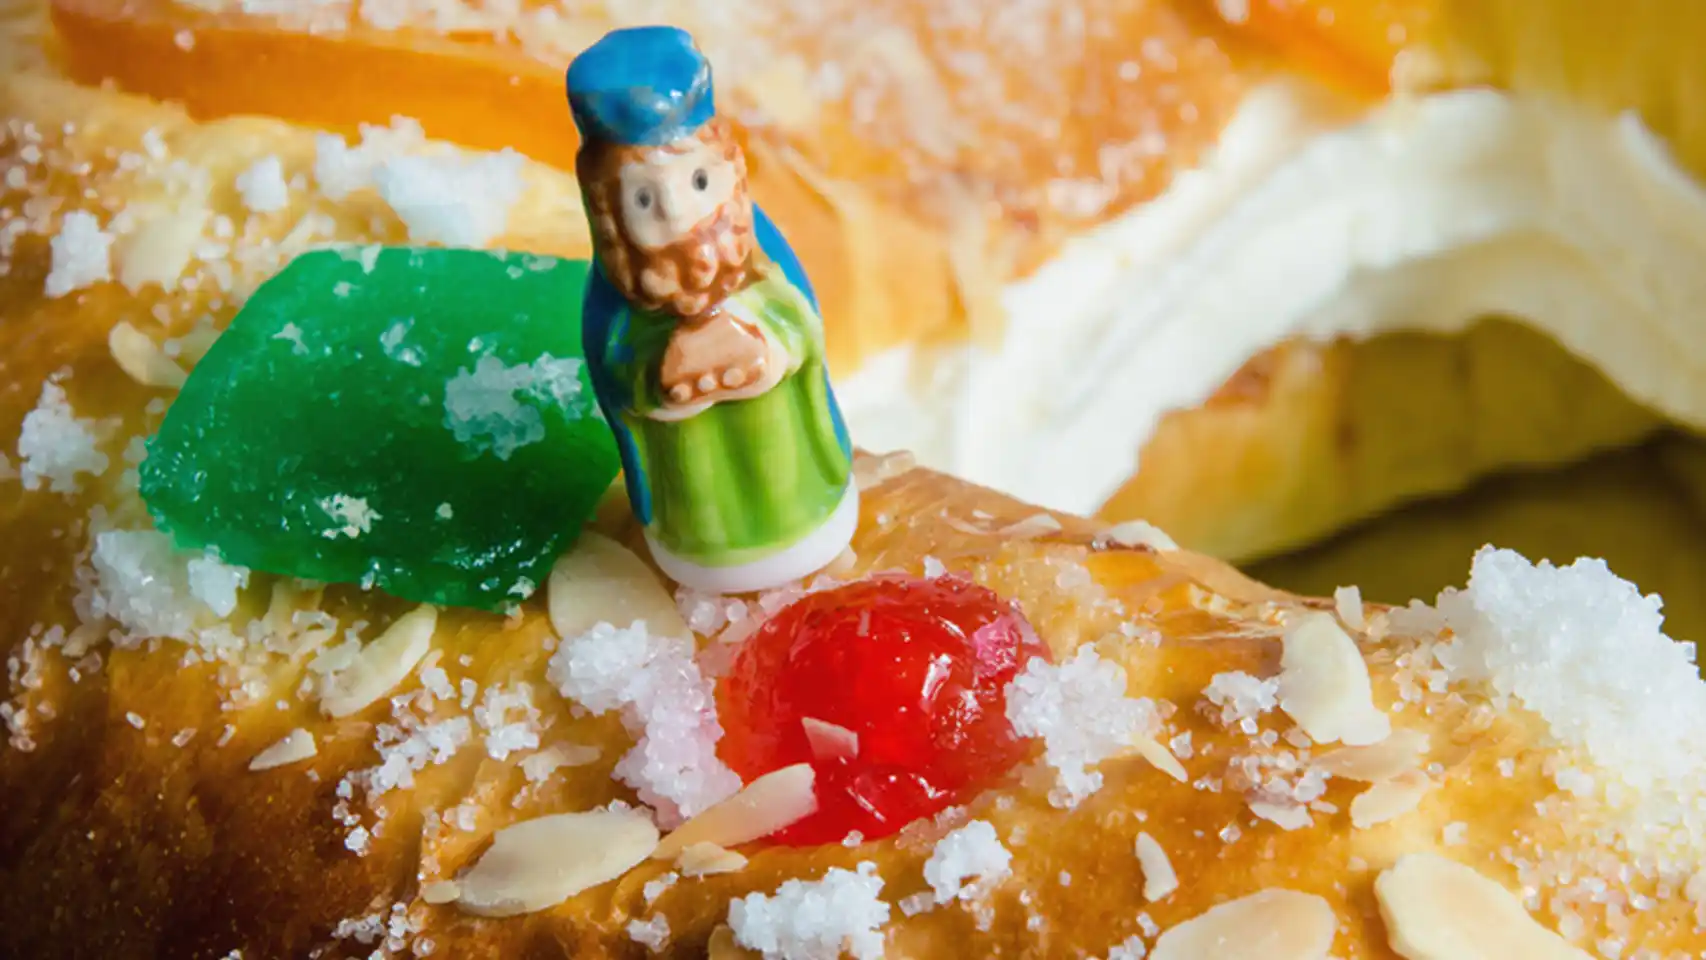 La figure du roi à l'intérieur du Roscón de Reyes (gâteau des Rois)